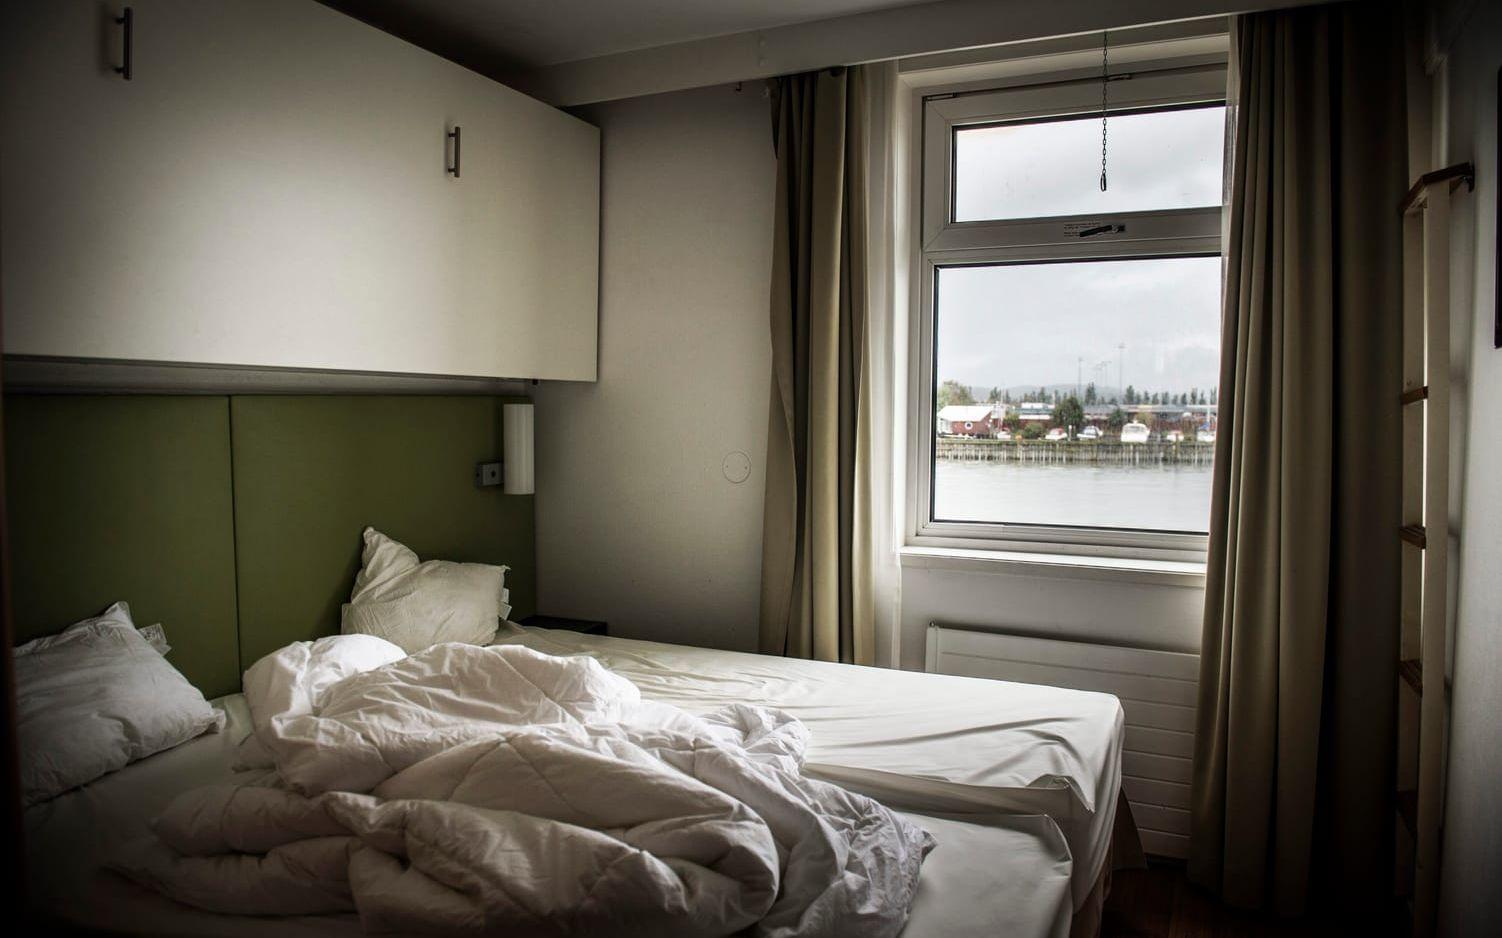 Snart får hotellet ny utsikt från hotellrummen, i Sundsvall. "Var någonstans i Göteborg kan du bo såhär?", säger Per Liljenfeldt, projektledare på Grandab som sköter förvaltningen av Astoria. Bild: Jenny Ingemarsson.